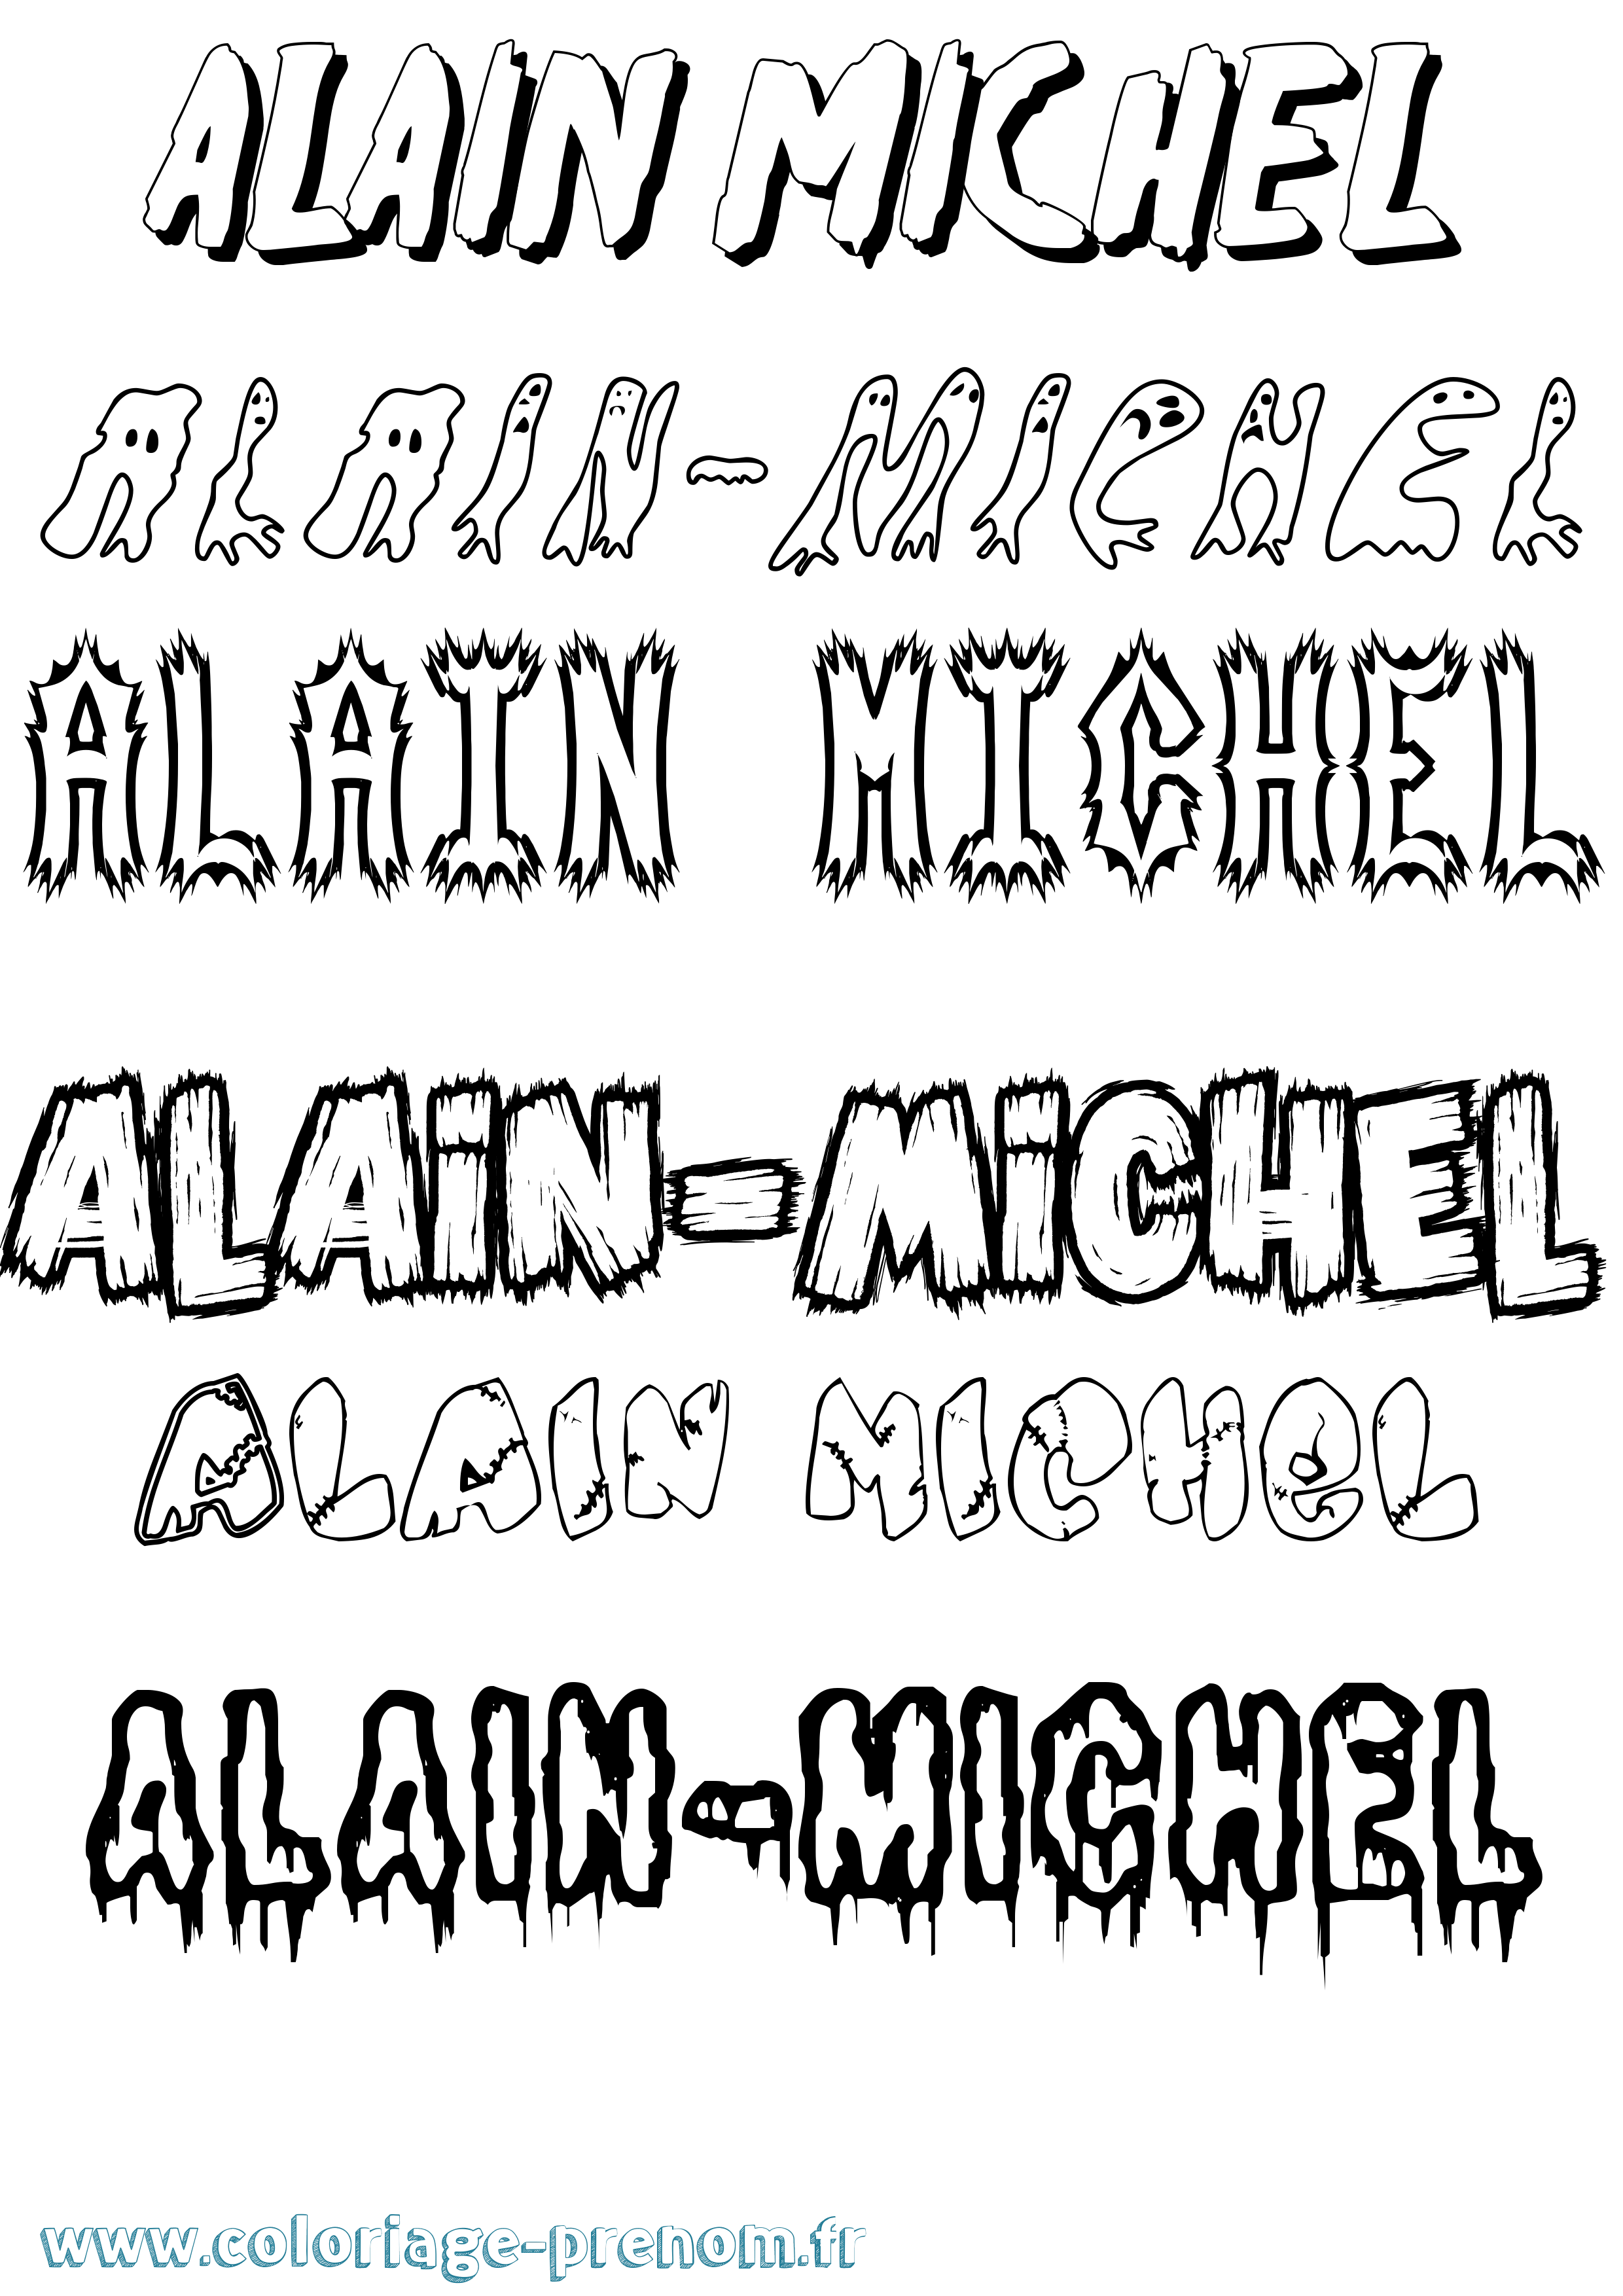 Coloriage prénom Alain-Michel Frisson